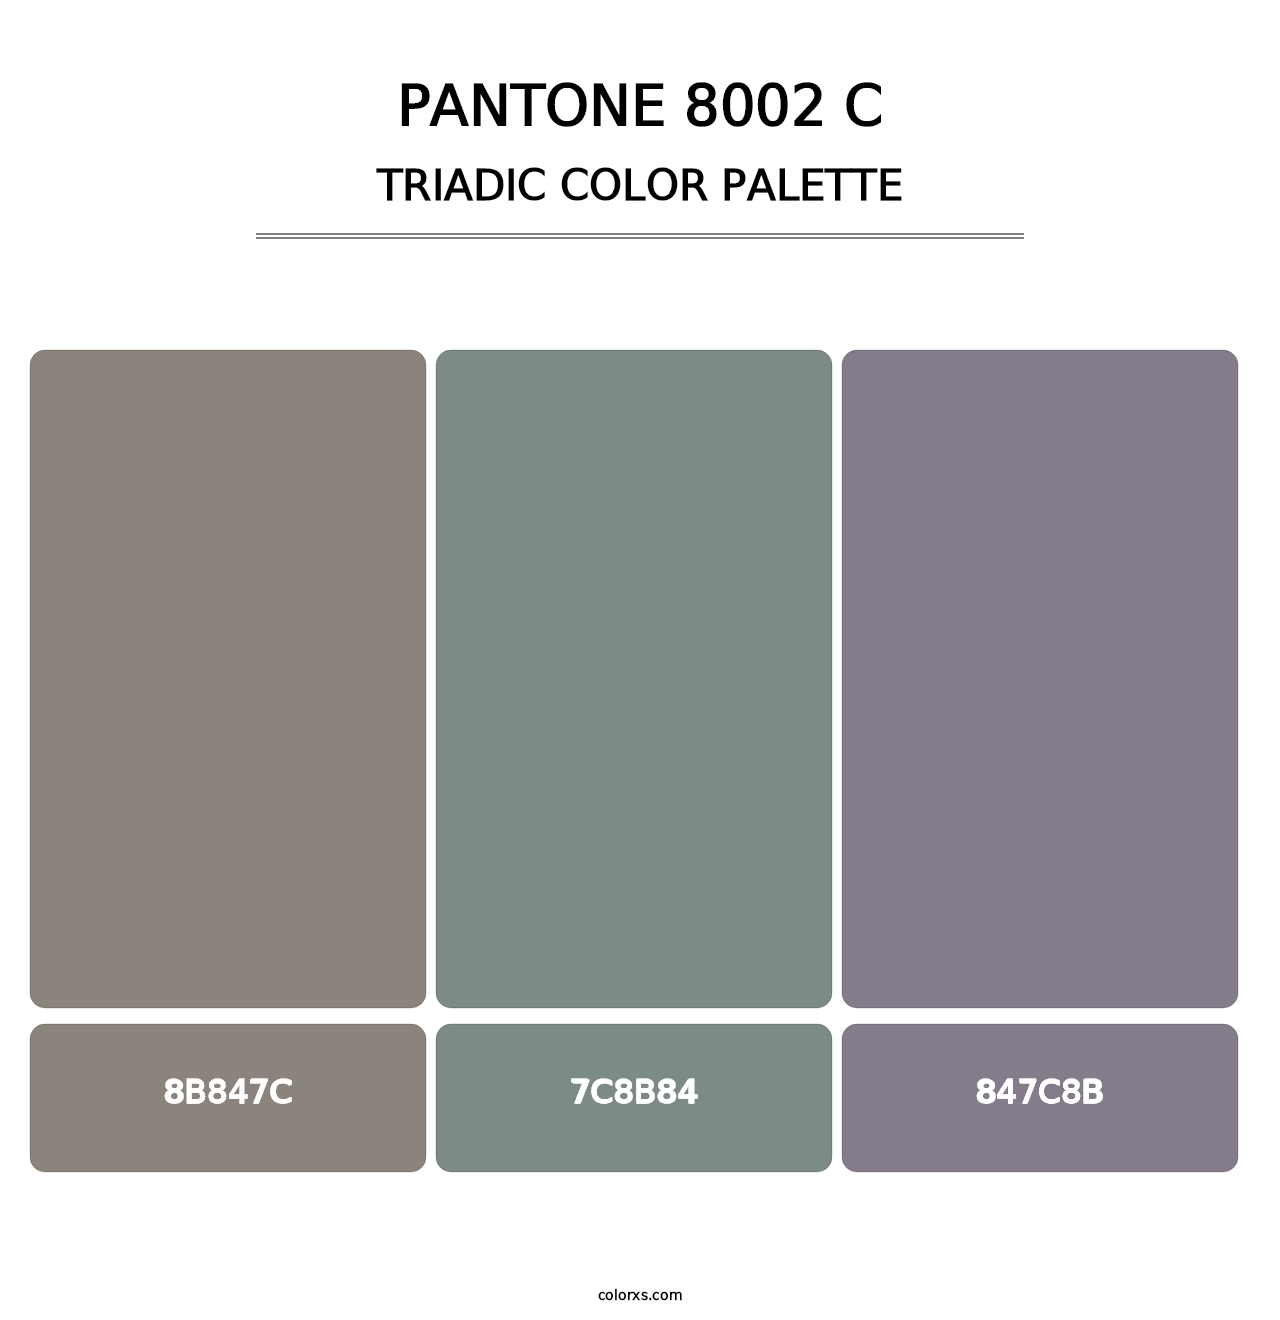 PANTONE 8002 C - Triadic Color Palette